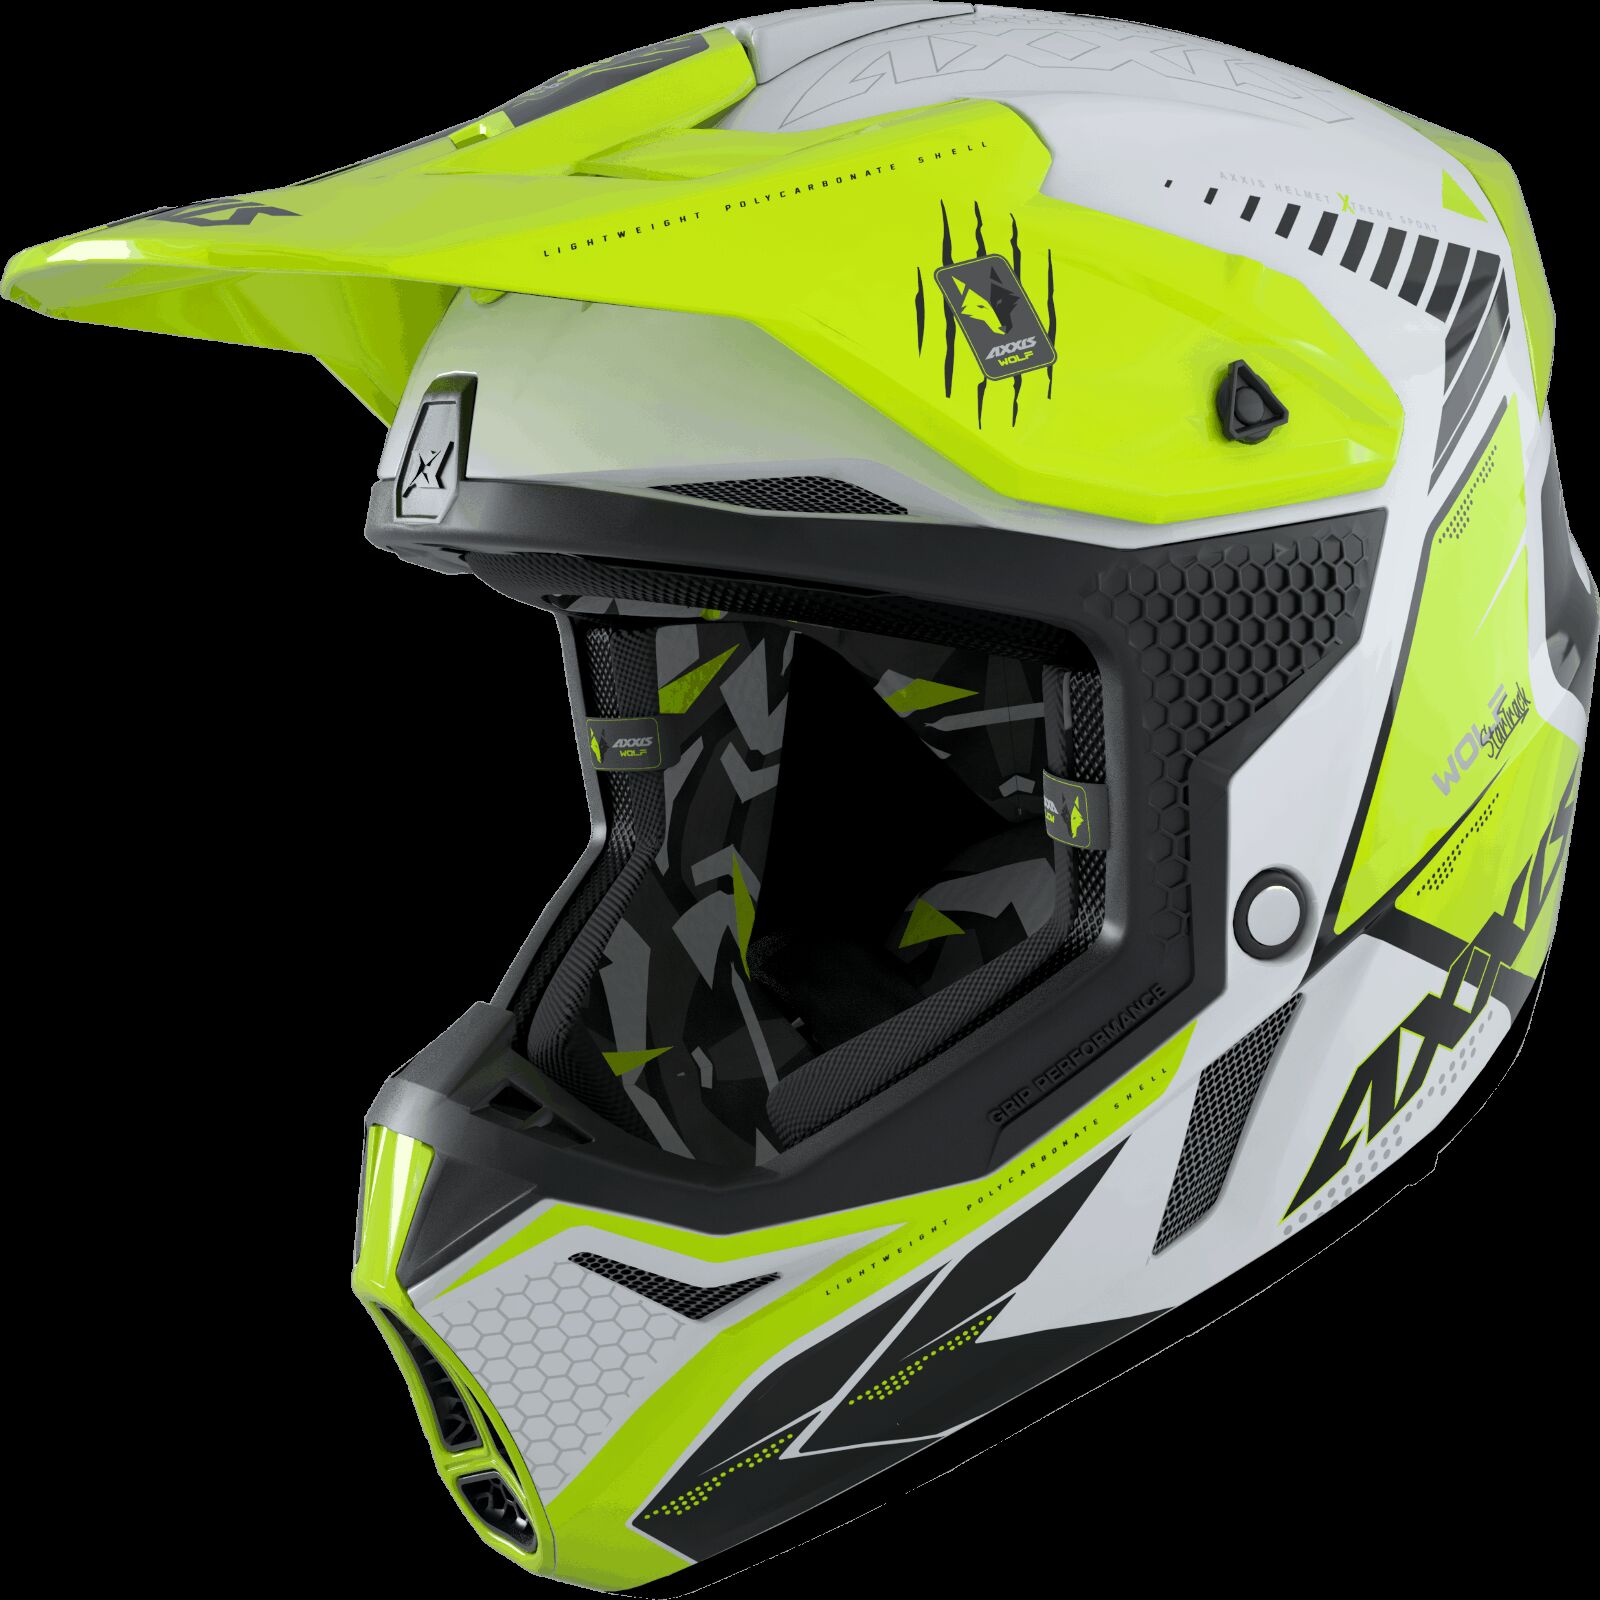 Obrázek produktu Motokrosová helma AXXIS WOLF ABS star track a3 lesklá fluor žlutá XS 42587410303